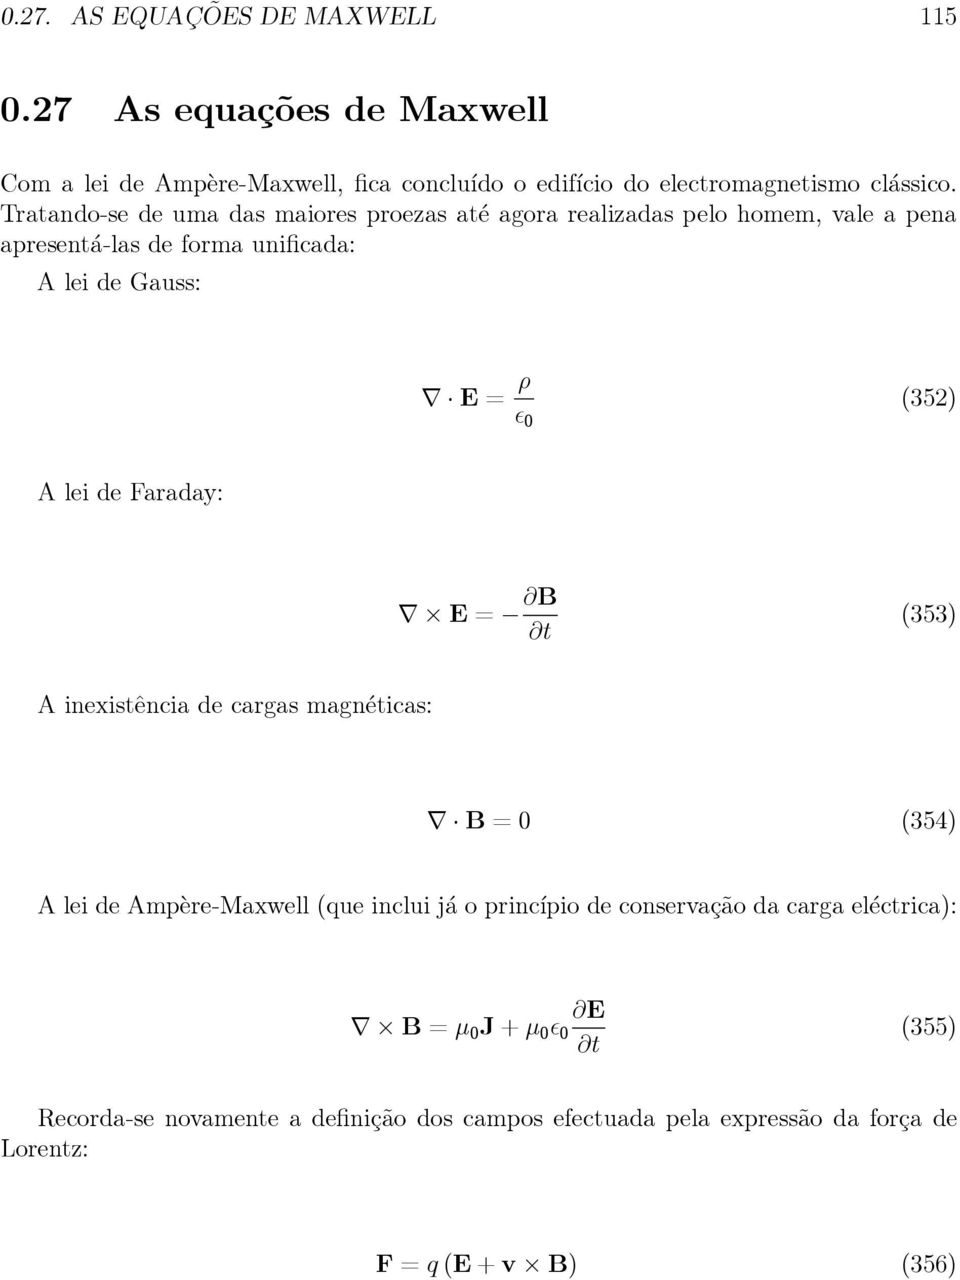 (352) AleideFaraday: E= B (353) A inexistência de cargas magnéticas: B=0 (354) A lei de Ampère-Maxwell(que inclui já o princípio de conservação